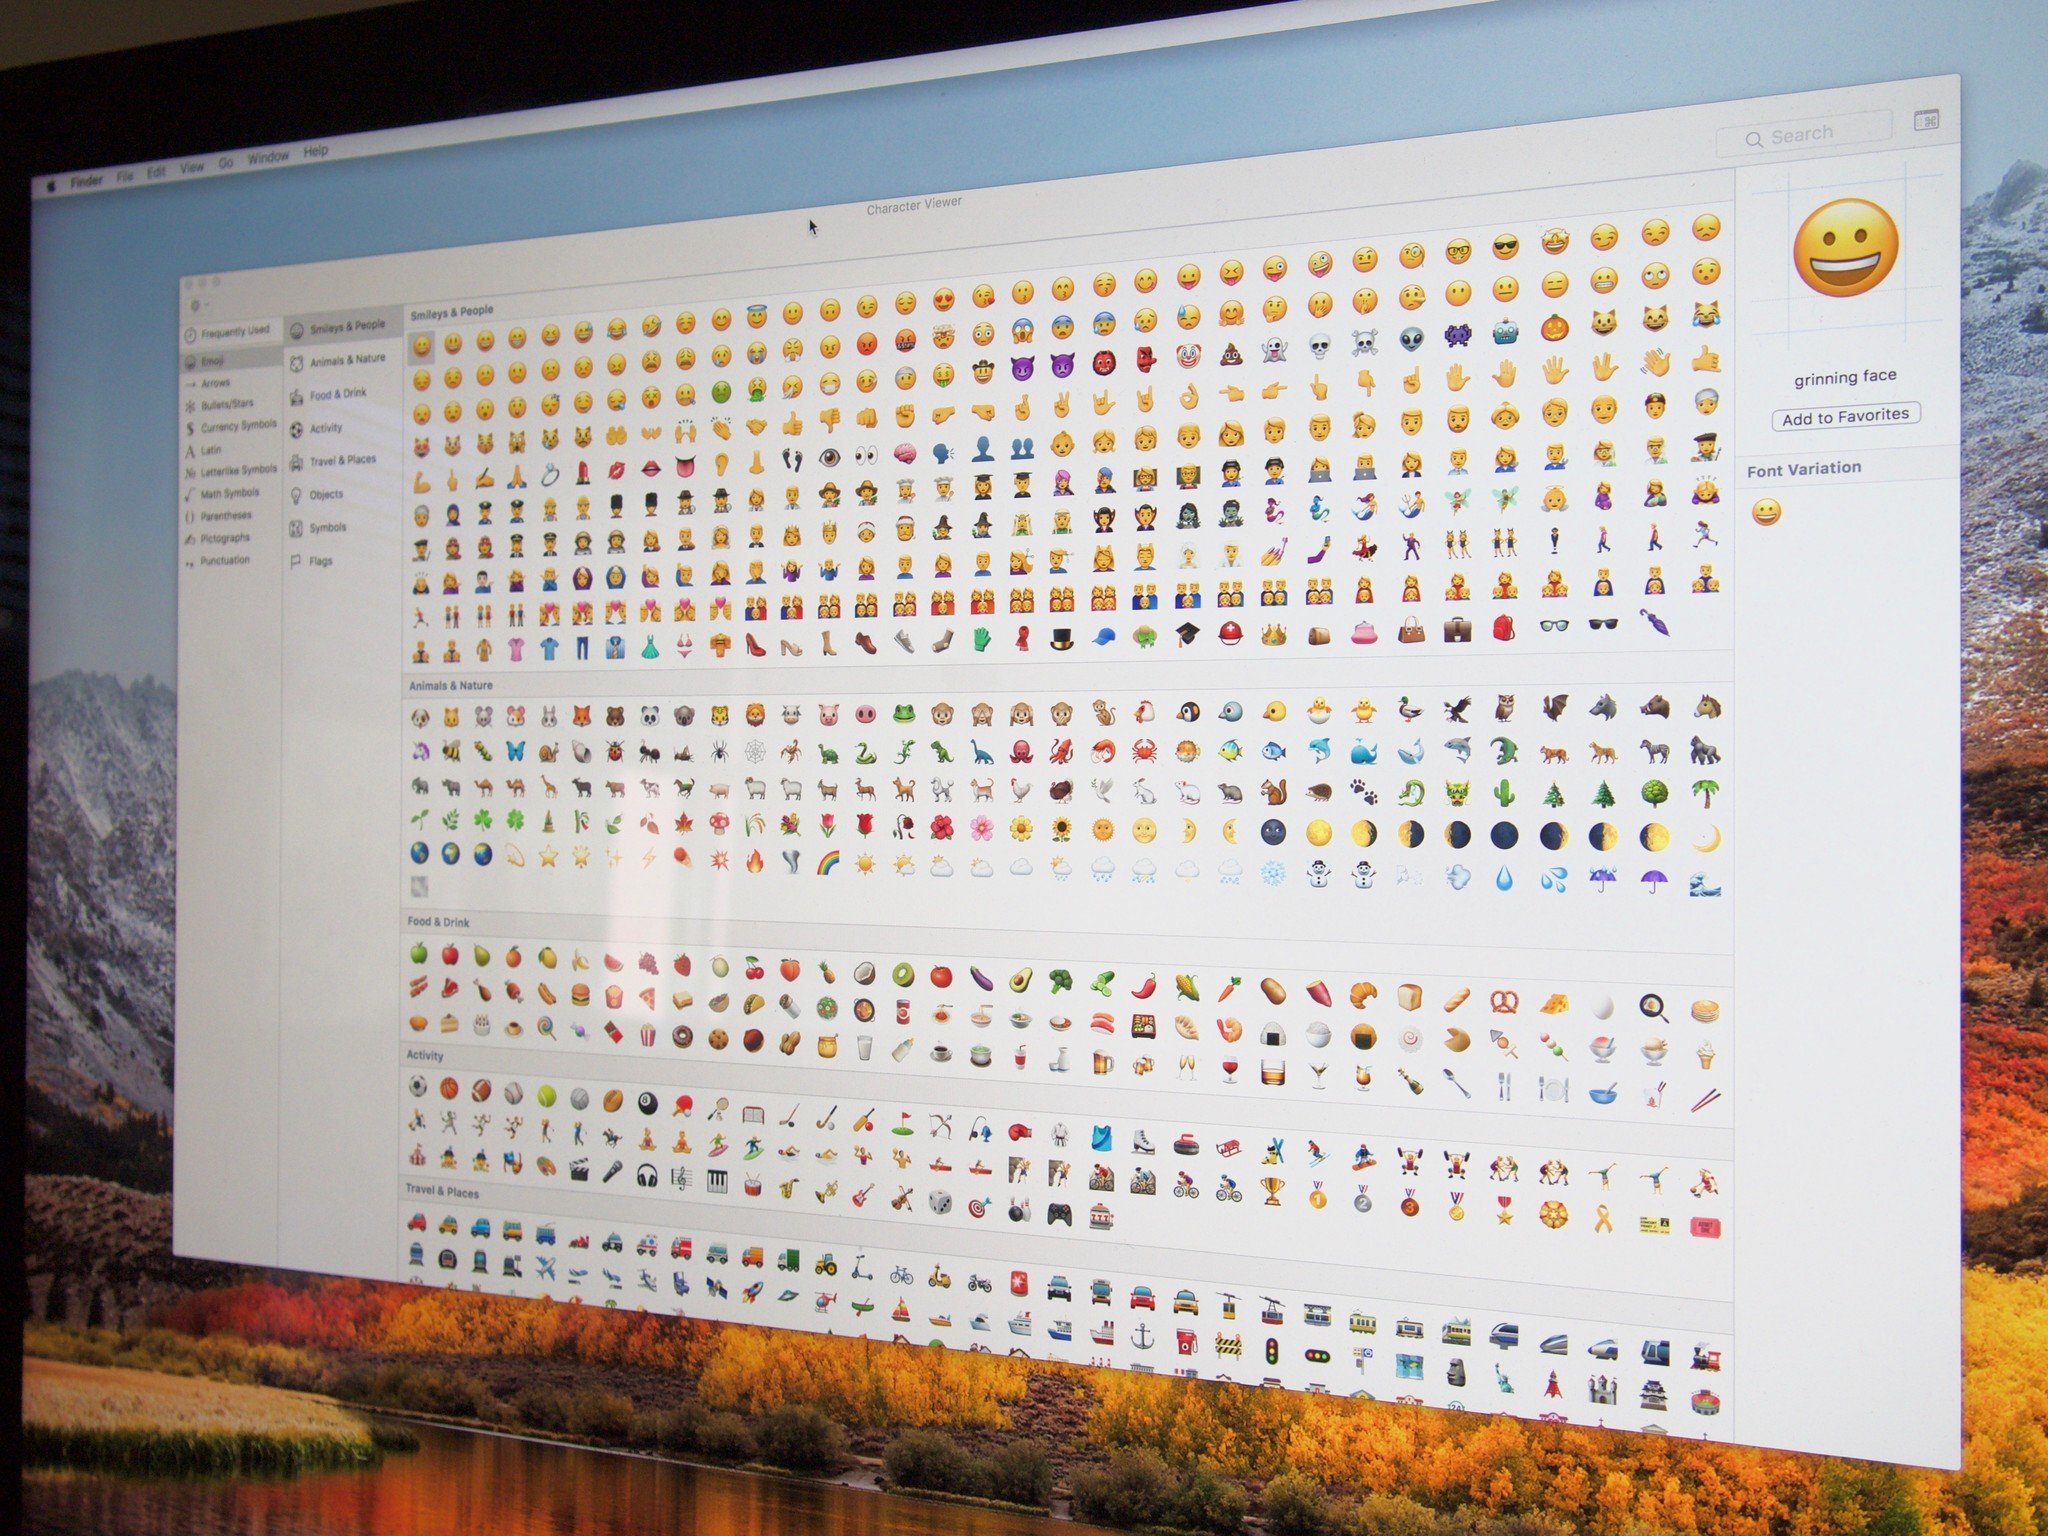 Total 86+ imagen poner emojis en mac - Viaterra.mx